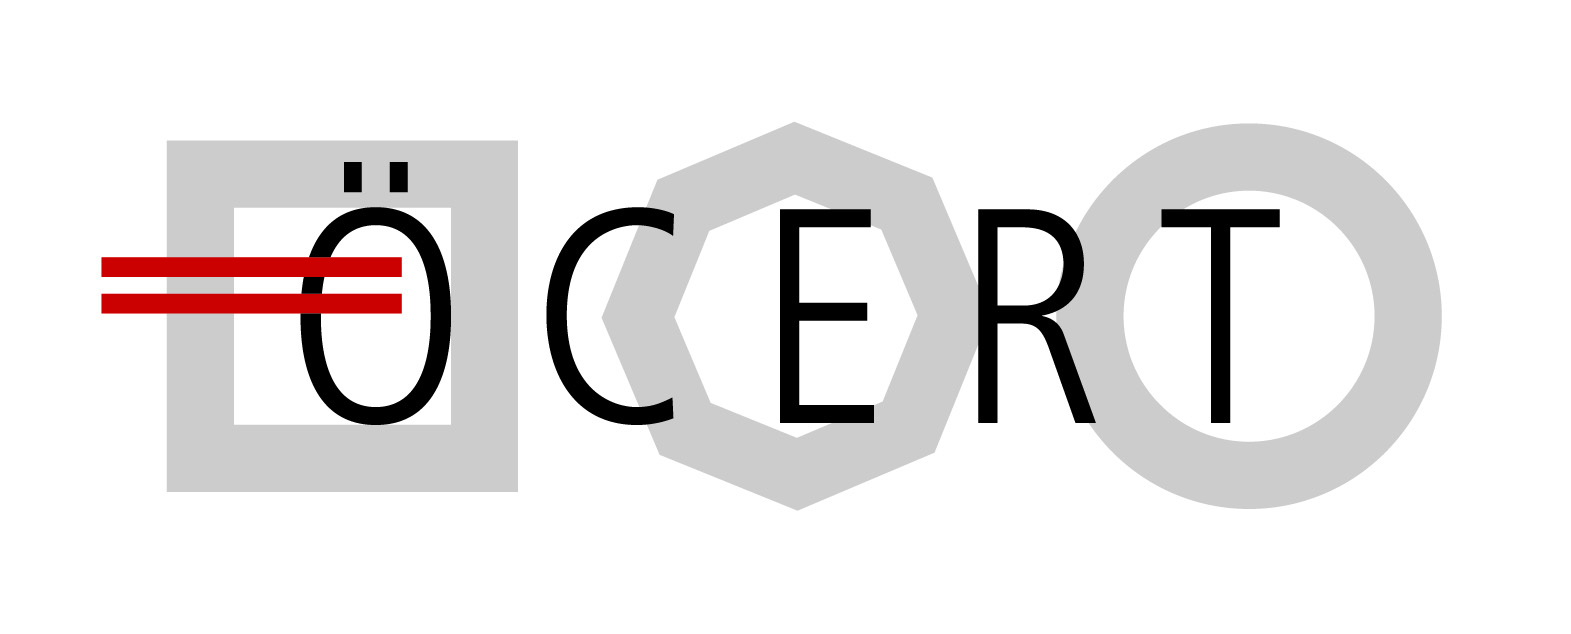 ÖCERT Logo